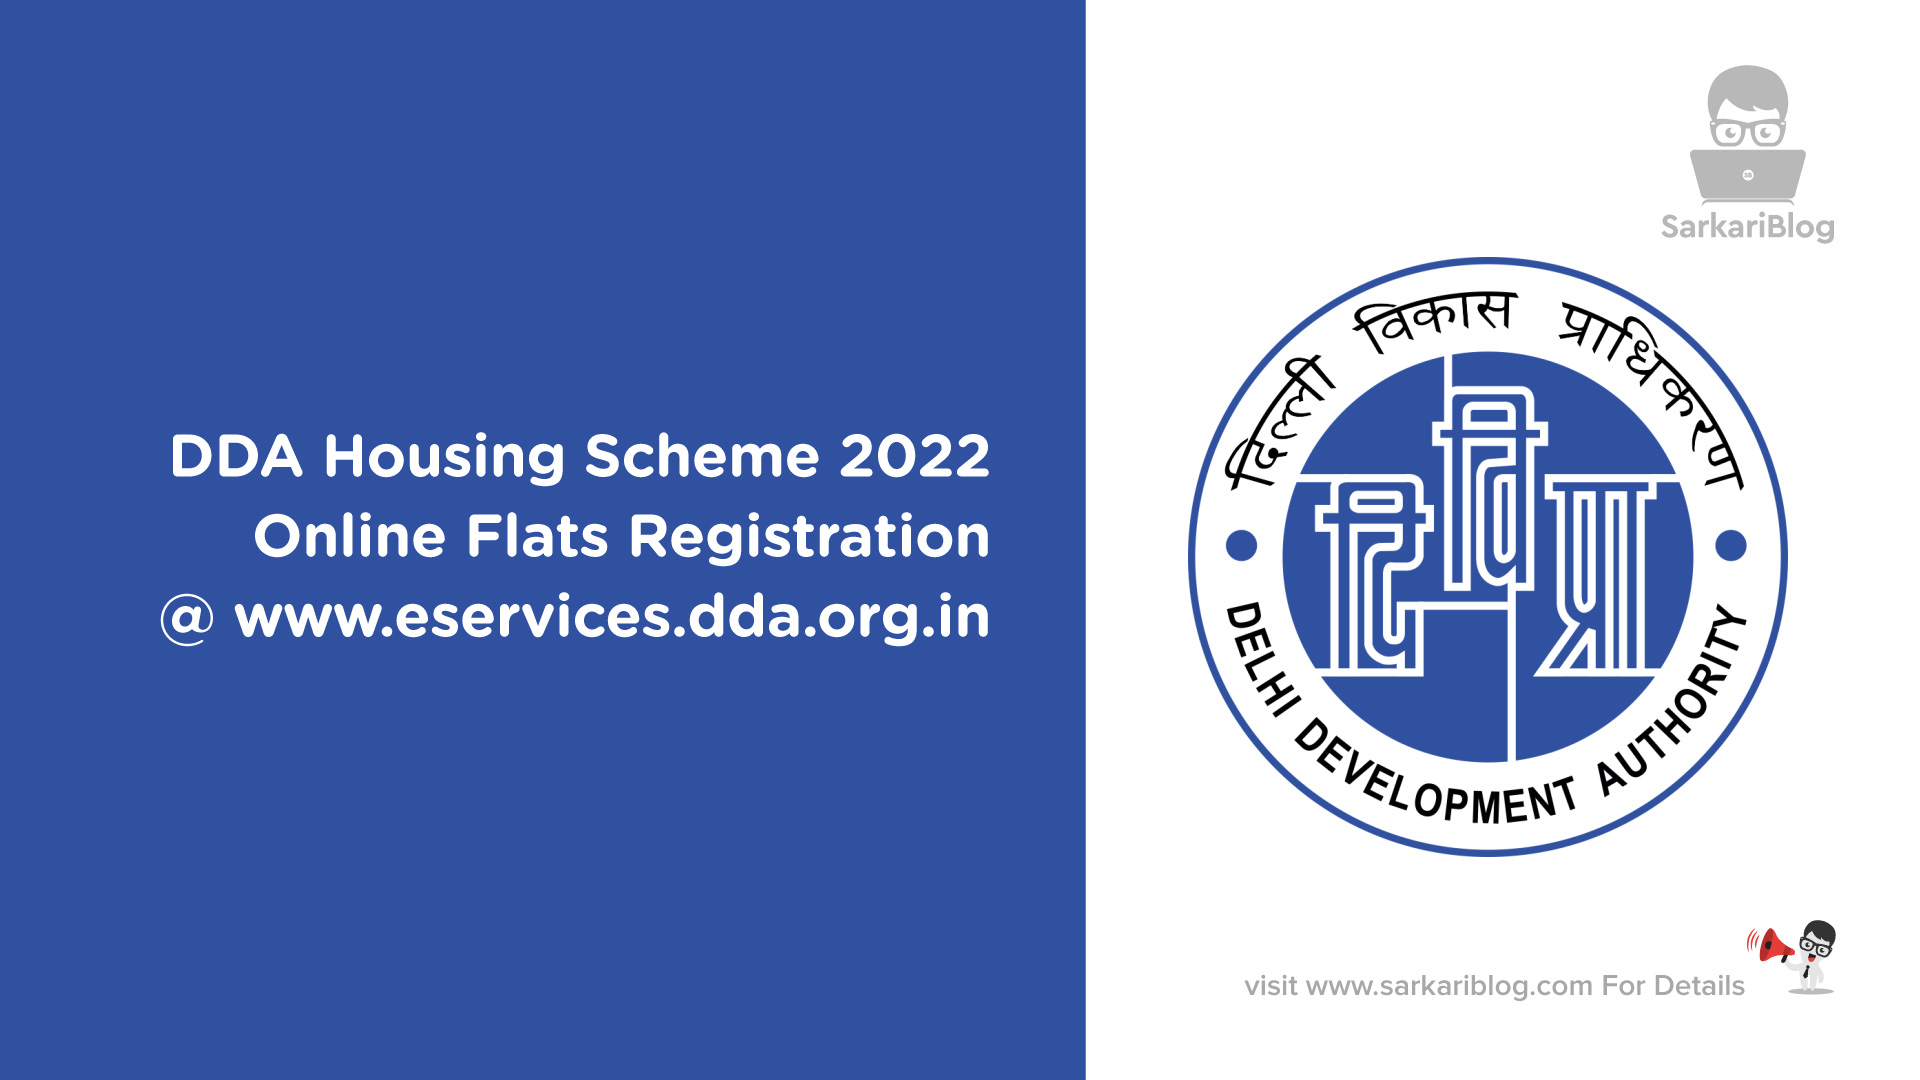 DDA Housing Scheme 2022 Online Flats Registration